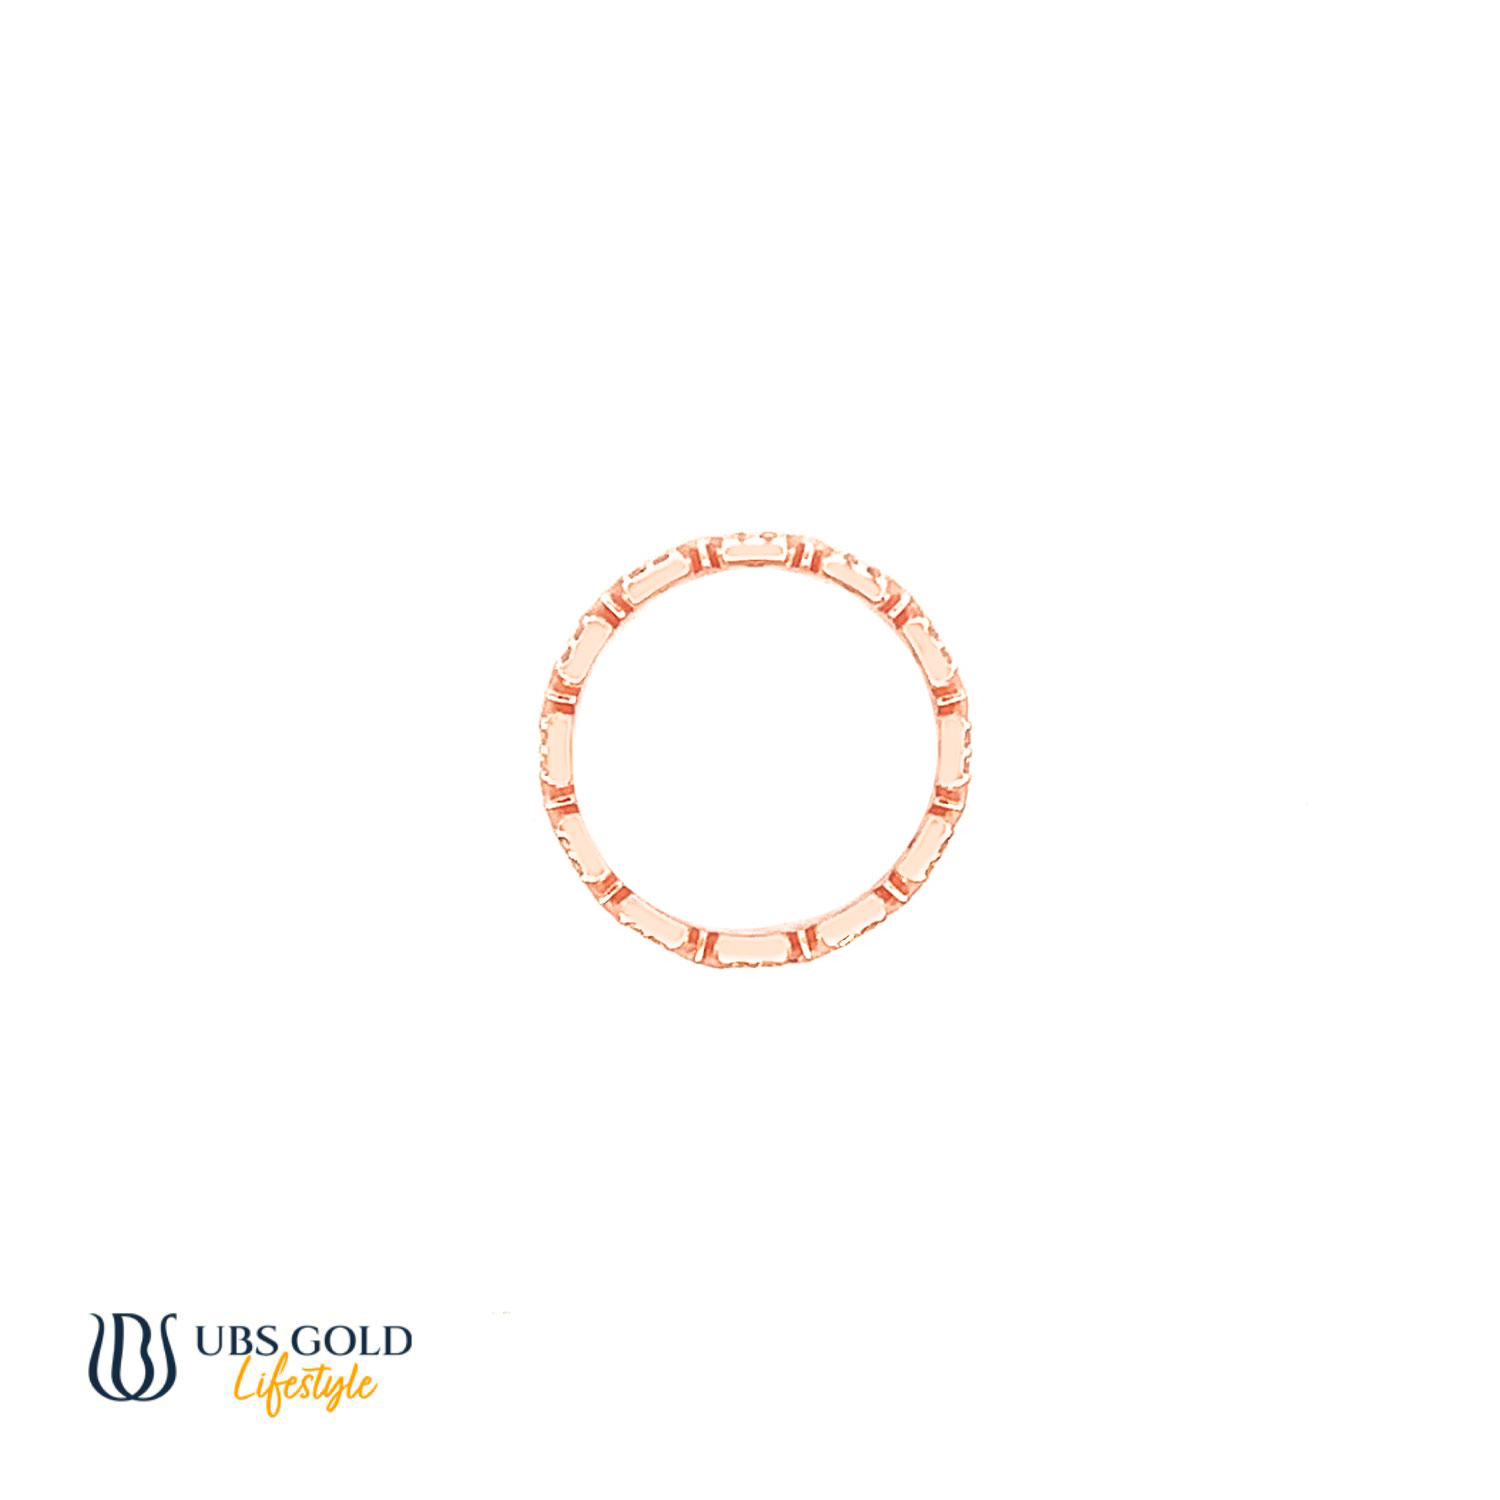 UBS Gold Cincin Emas - Cc16724 - 17K